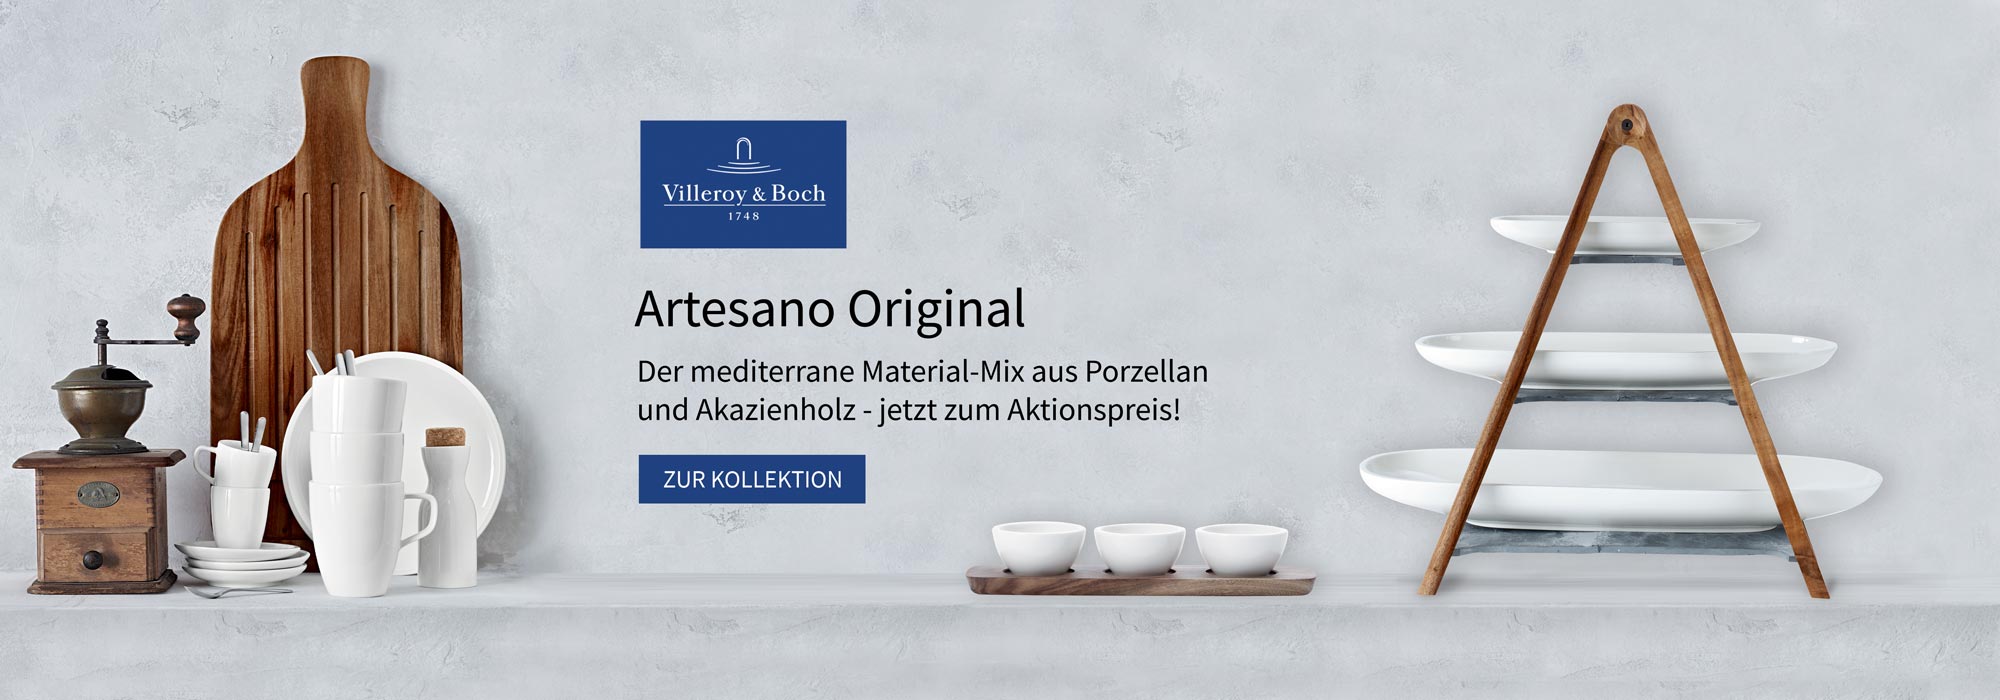 Villeroy & Boch Artesano Original